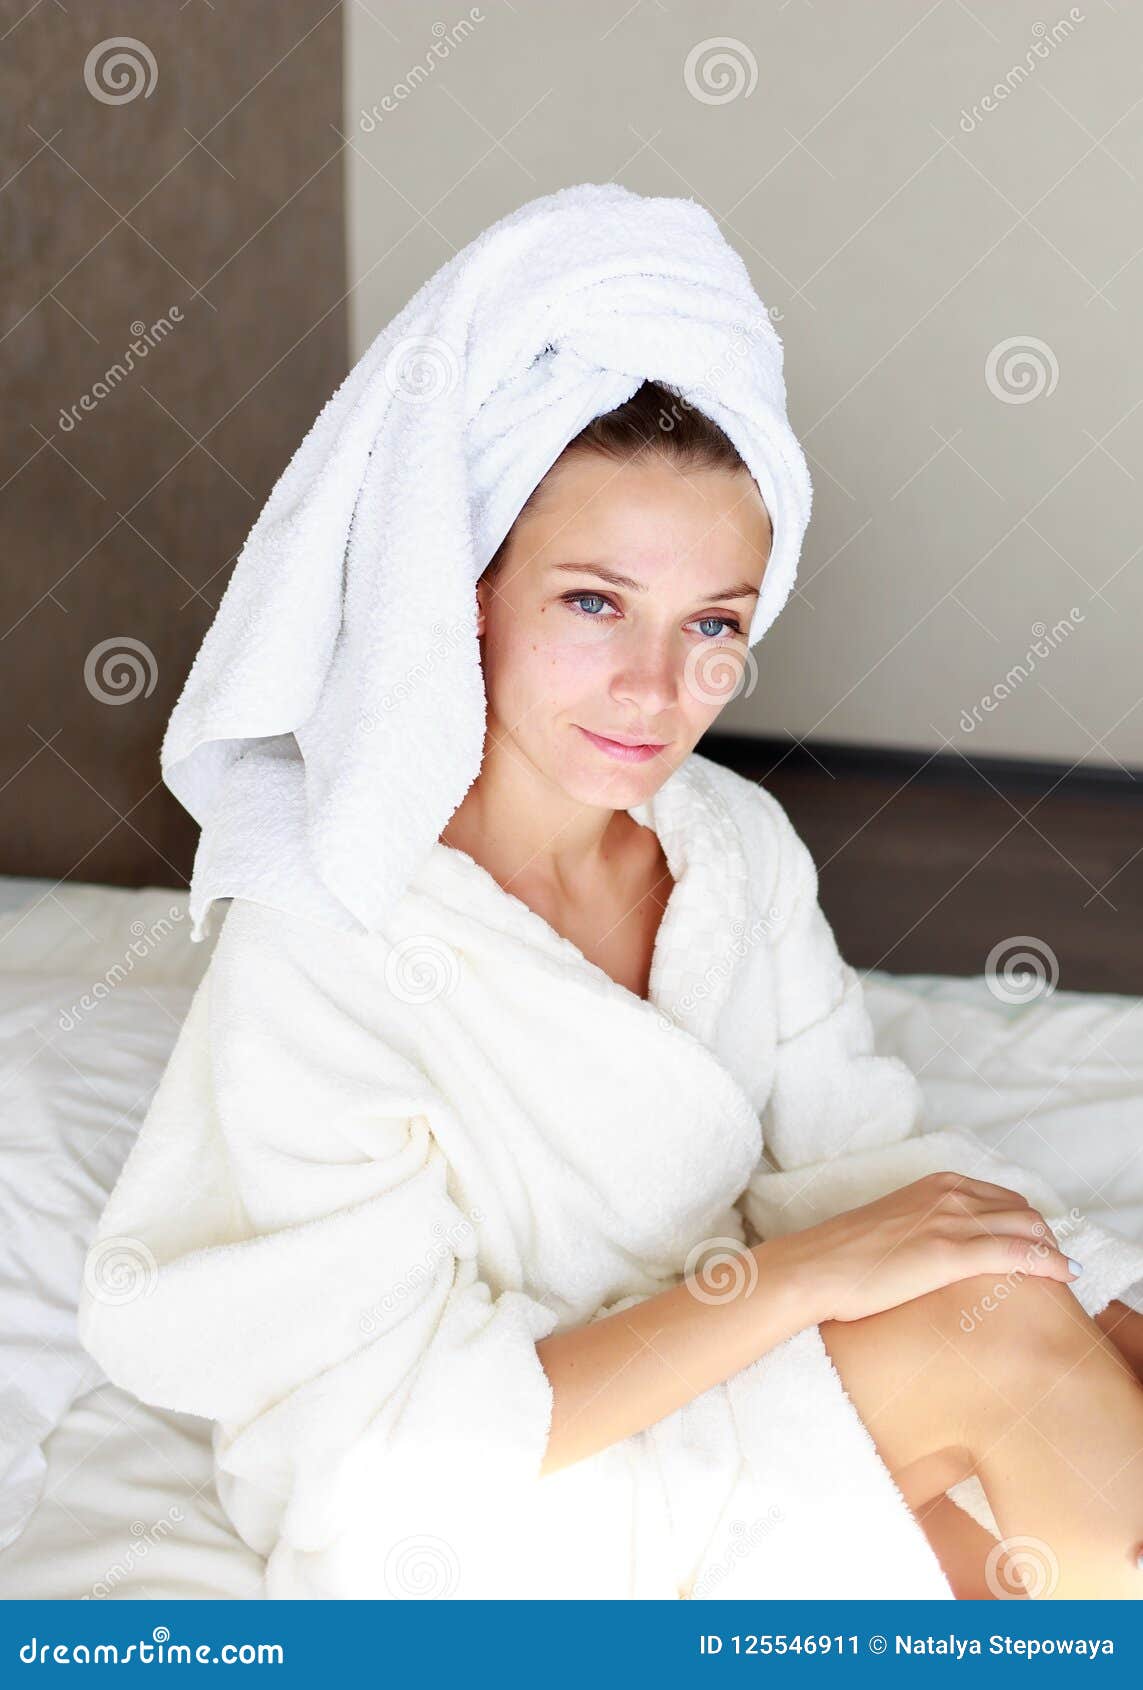 После душа на улицу. Девушка с полотенцем на голове. Девушка в халате и полотенце на голове. Красивая девушка в полотенце. Девушка в махровом полотенце.